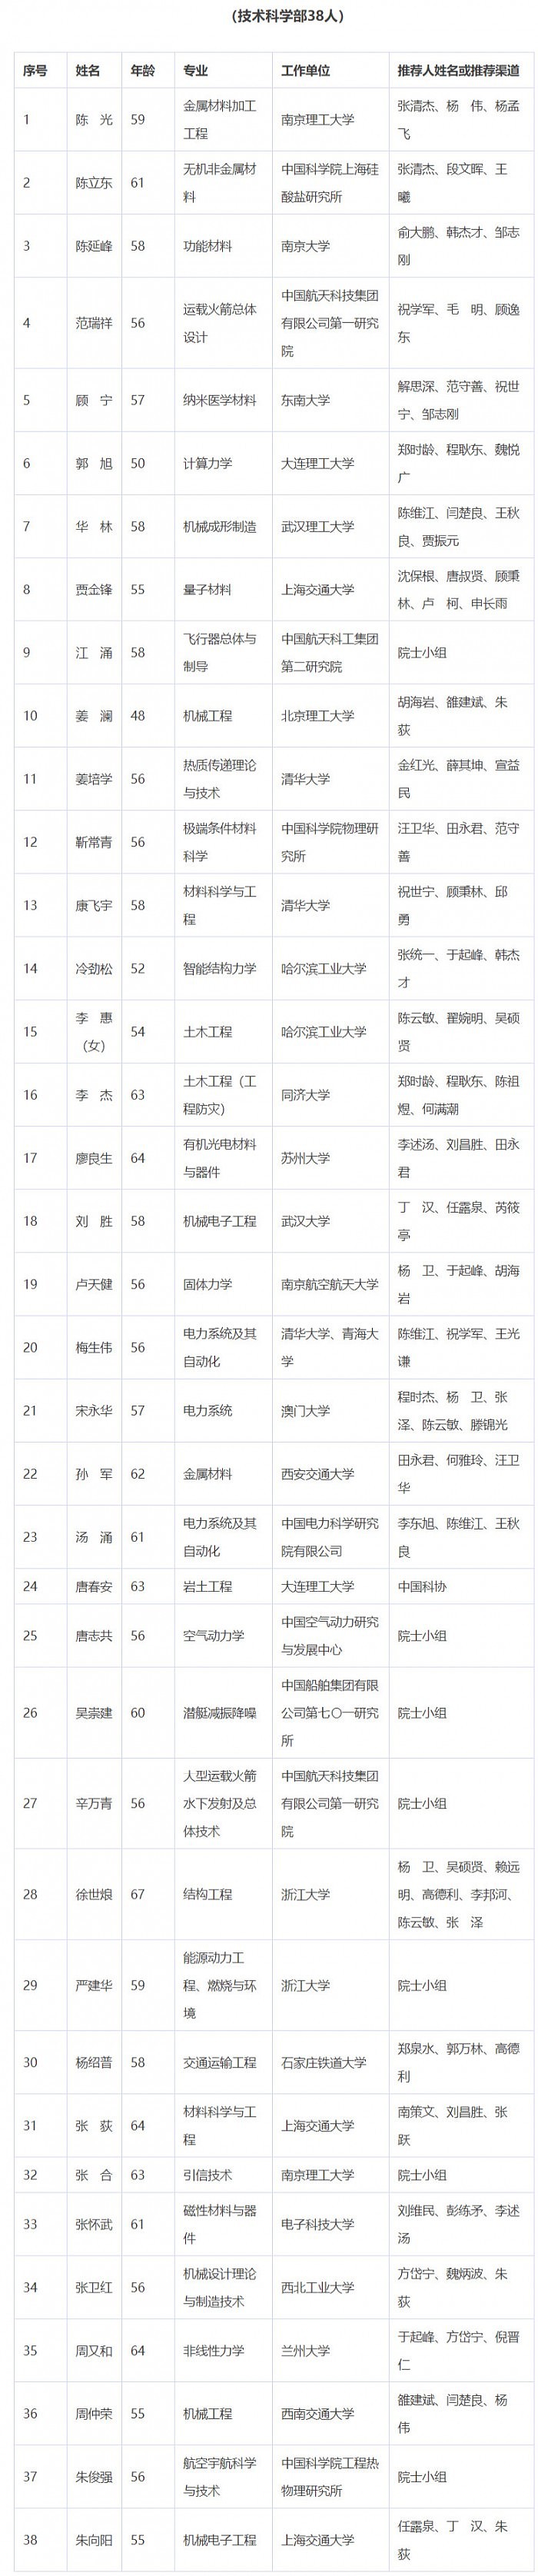 2021年中国科学院院士增选初步候选人名单公布 - 9